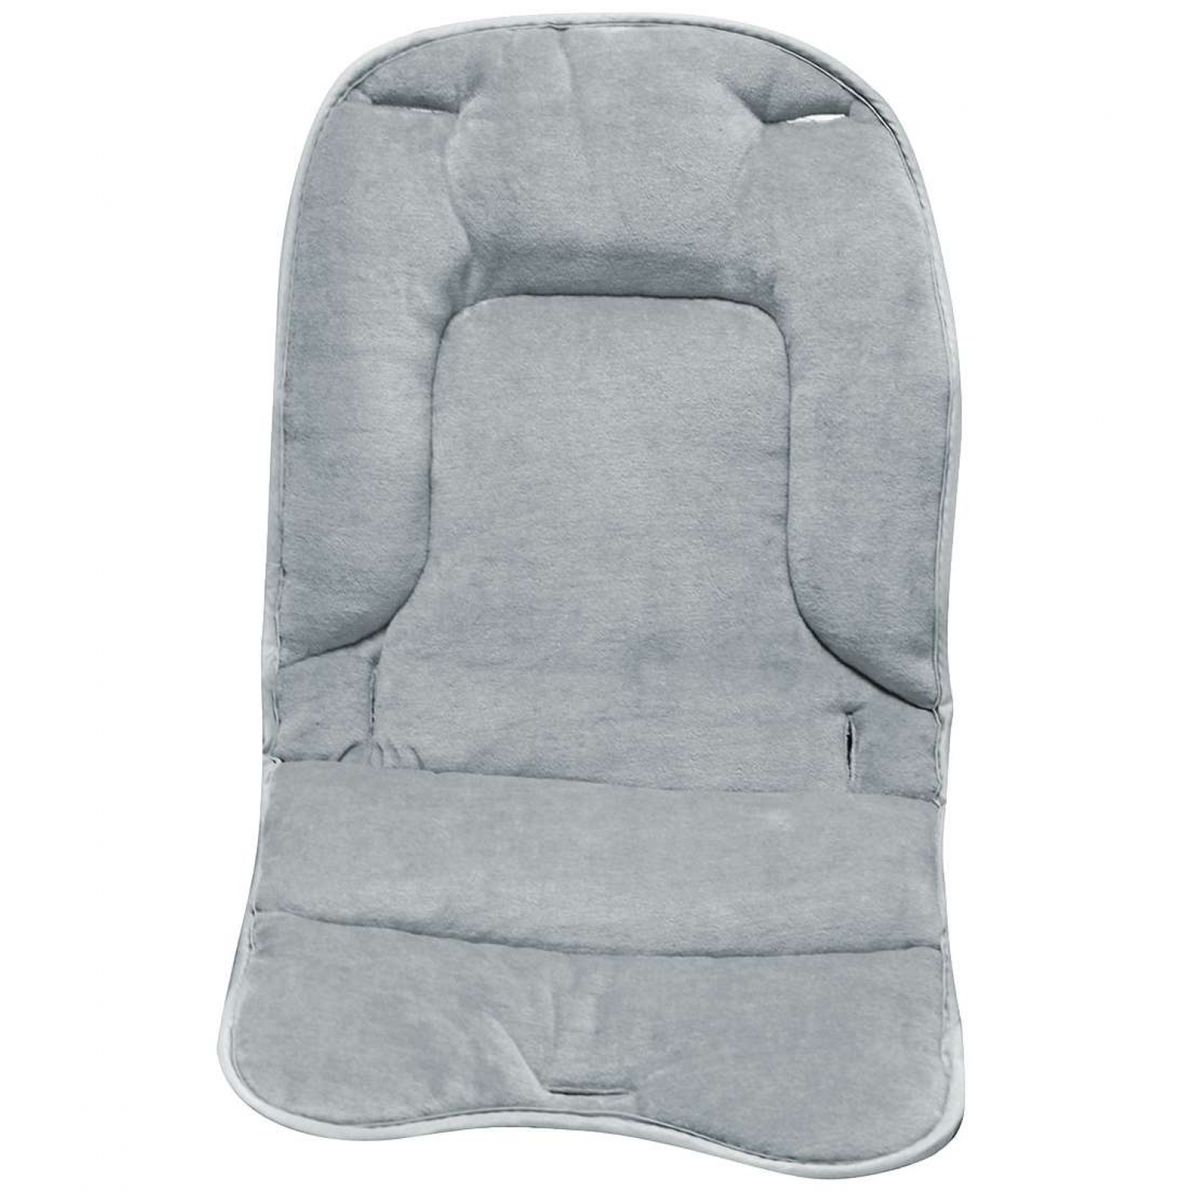 Bébé Confort Coussin d'assise de chaise haute enfant Timba comfort cushion  Warm Gray